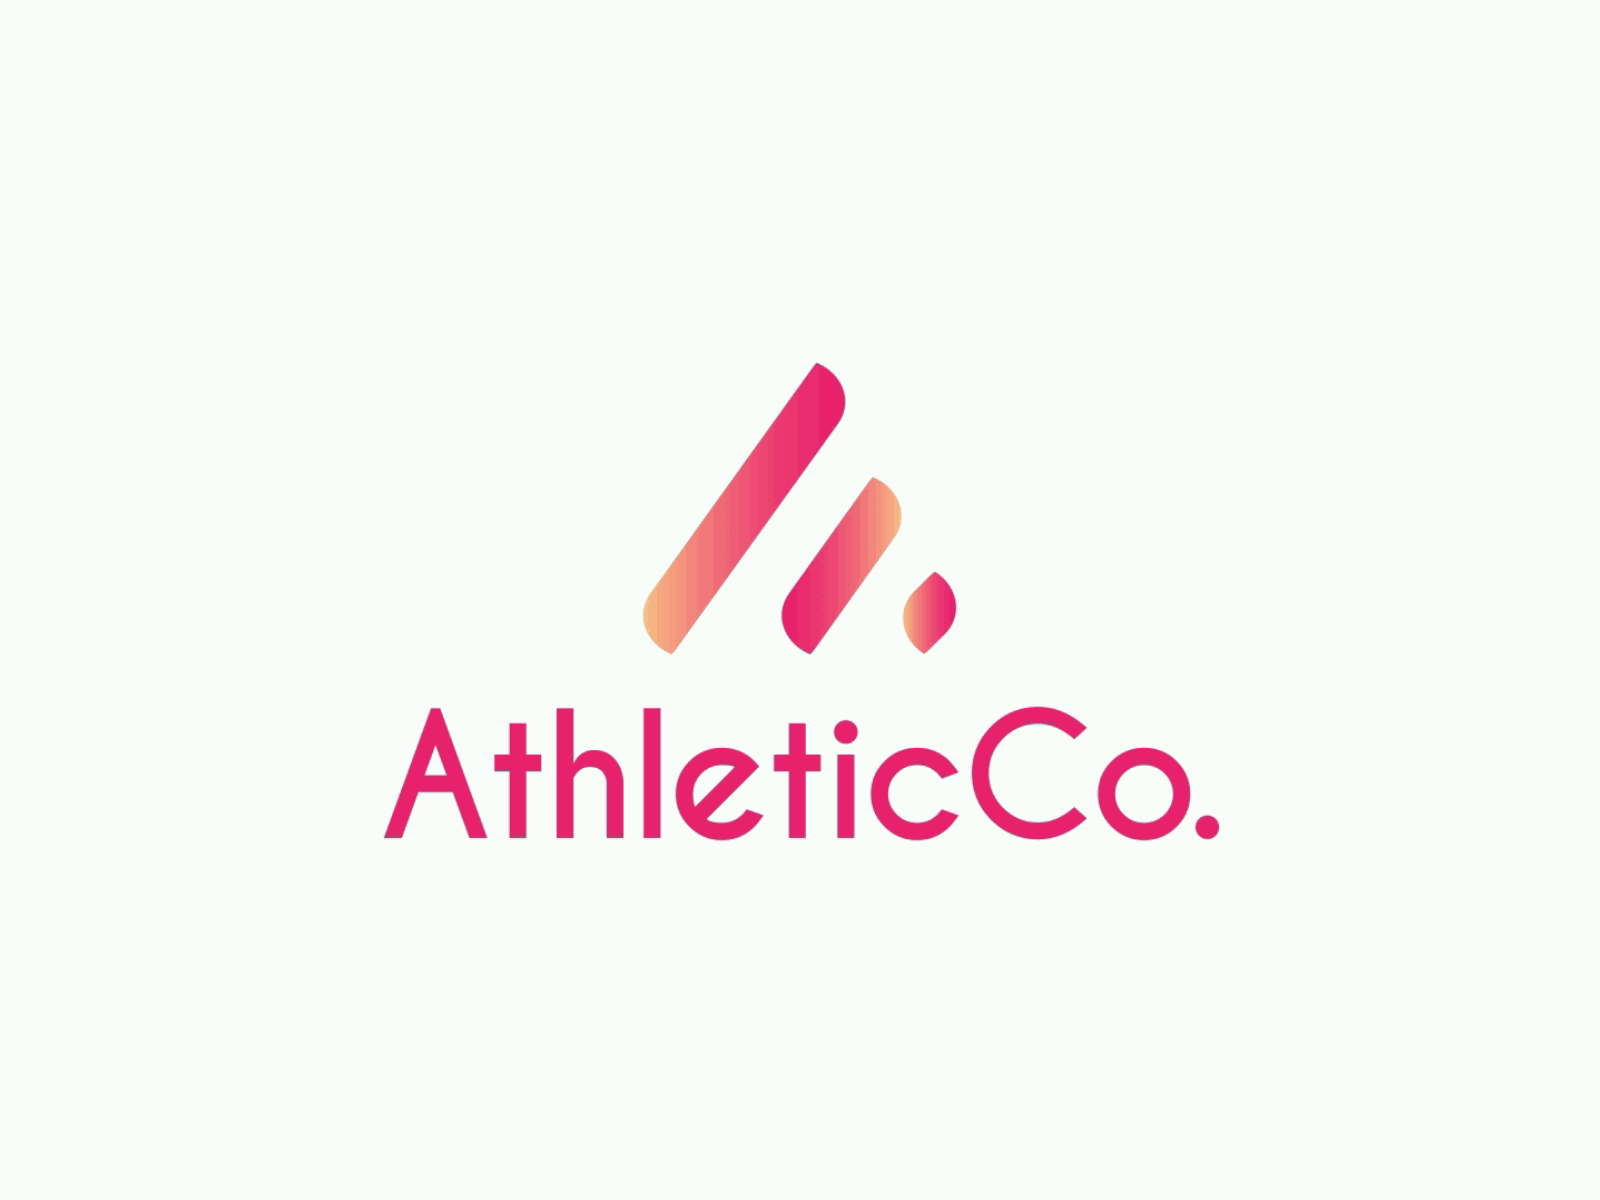 Athletic co. logo animation animated logo animation dot logo animation intro logo logo animation logoanimation morphing logo motion graphics